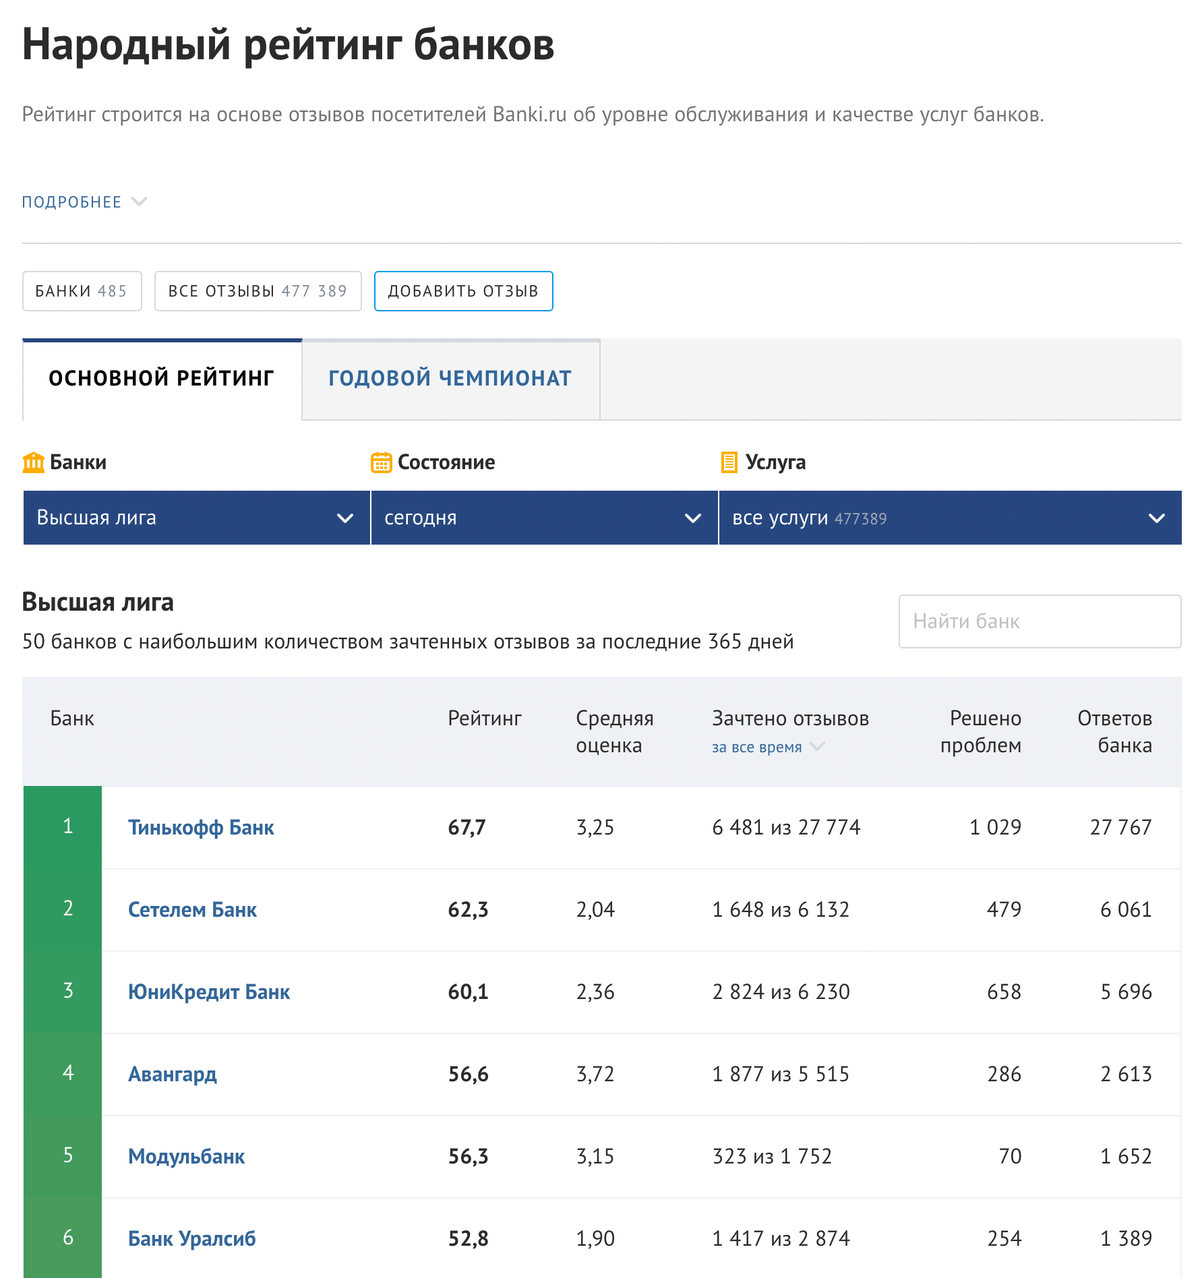 Тинькофф-банк на первом месте в народном рейтинге по отзывам на «Банках-ру». Этот скриншот мы сделали в феврале 2019&nbsp;года, если что-то поменяется — обновим